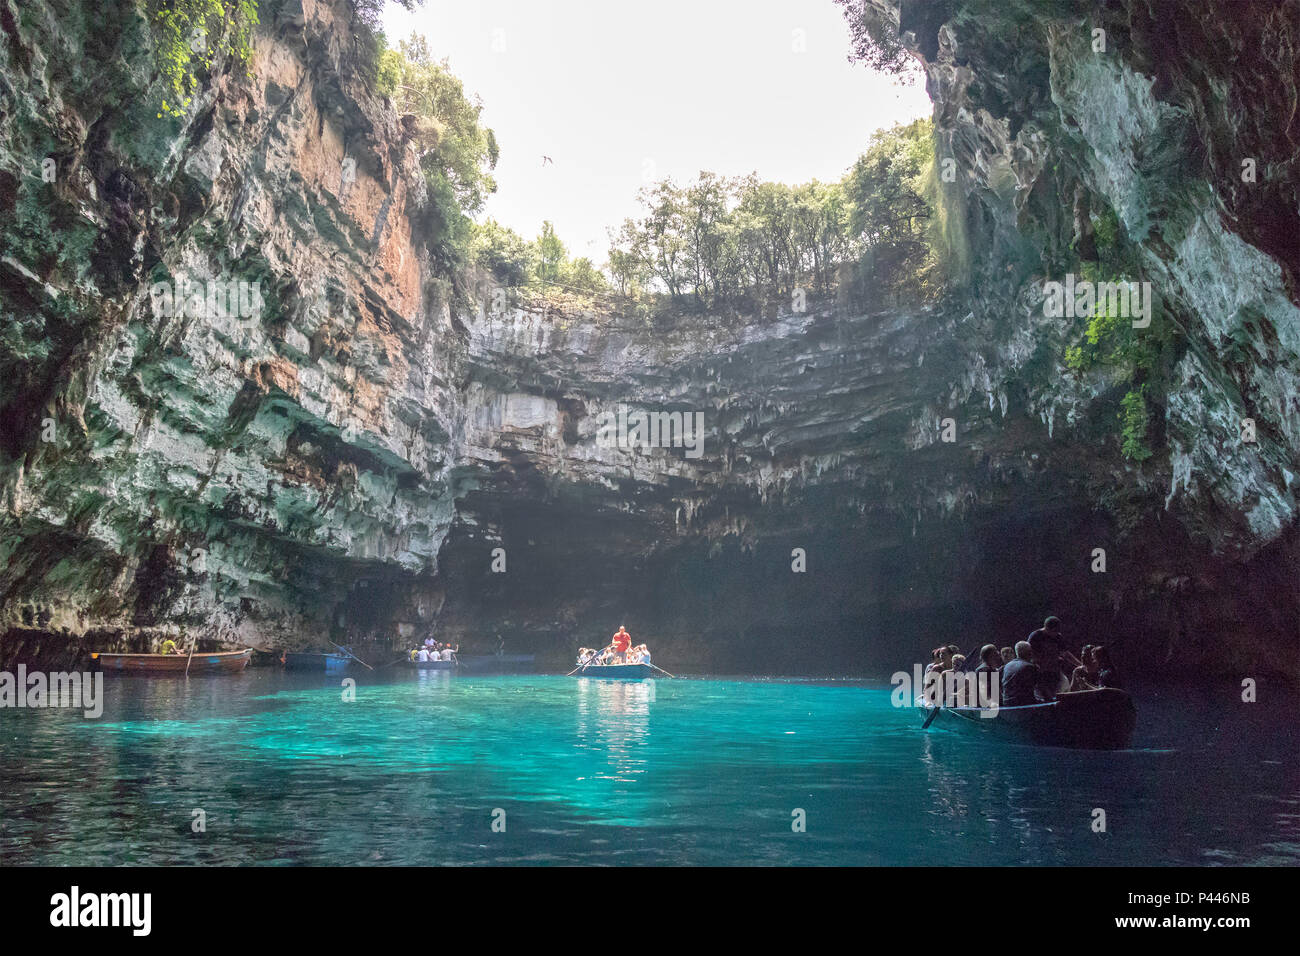 La Grotta Melissani Melissani o lago, anche Melisani, è una grotta situata sull'isola di Cefalonia, Grecia, a nord-ovest di Sami. Foto Stock